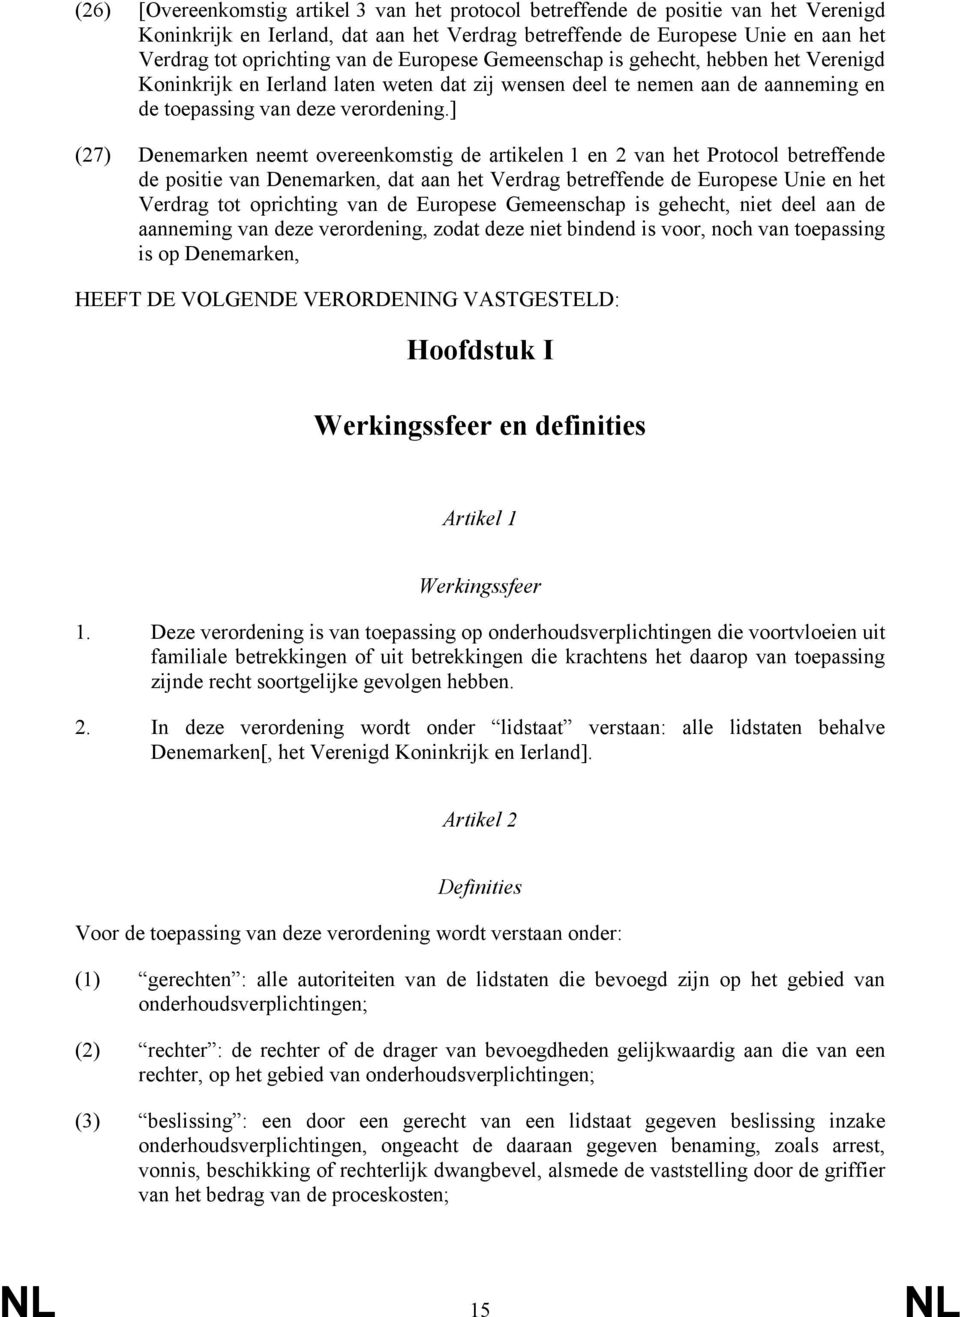 ] (27) Denemarken neemt overeenkomstig de artikelen 1 en 2 van het Protocol betreffende de positie van Denemarken, dat aan het Verdrag betreffende de Europese Unie en het Verdrag tot oprichting van